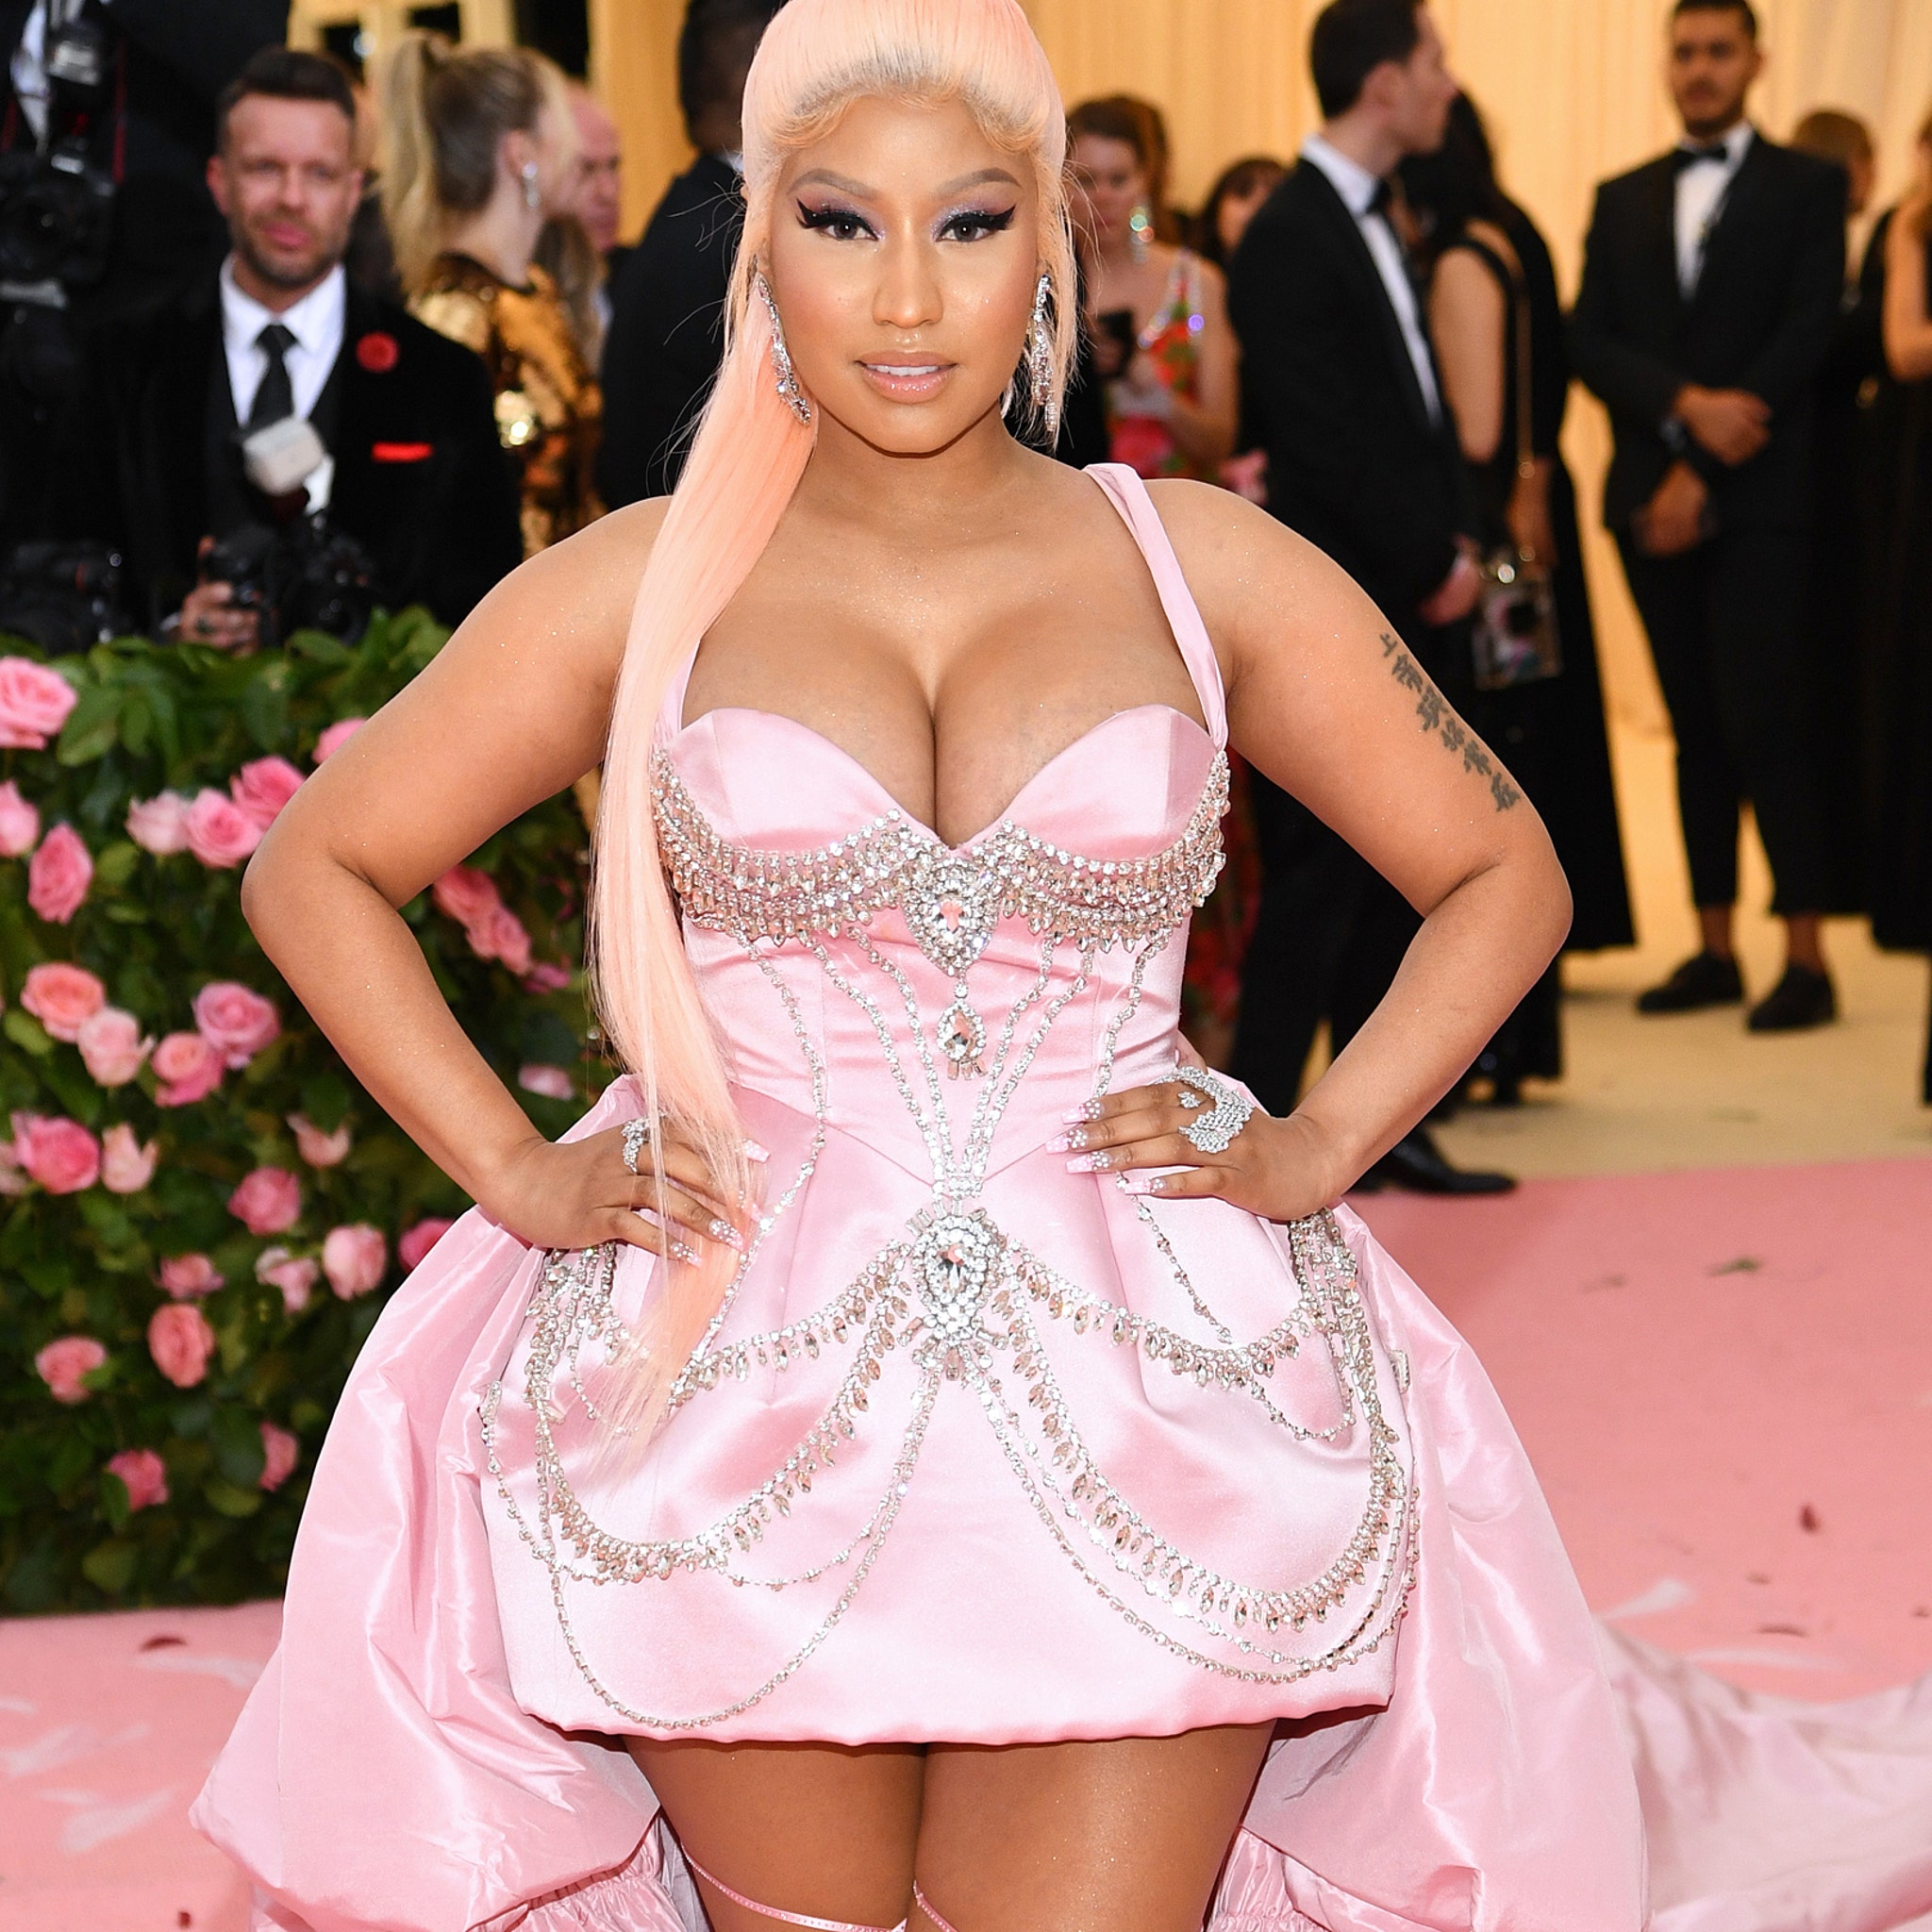 Nicki Minaj walks Met Gala 2022 red carpet with 'boobs popping out